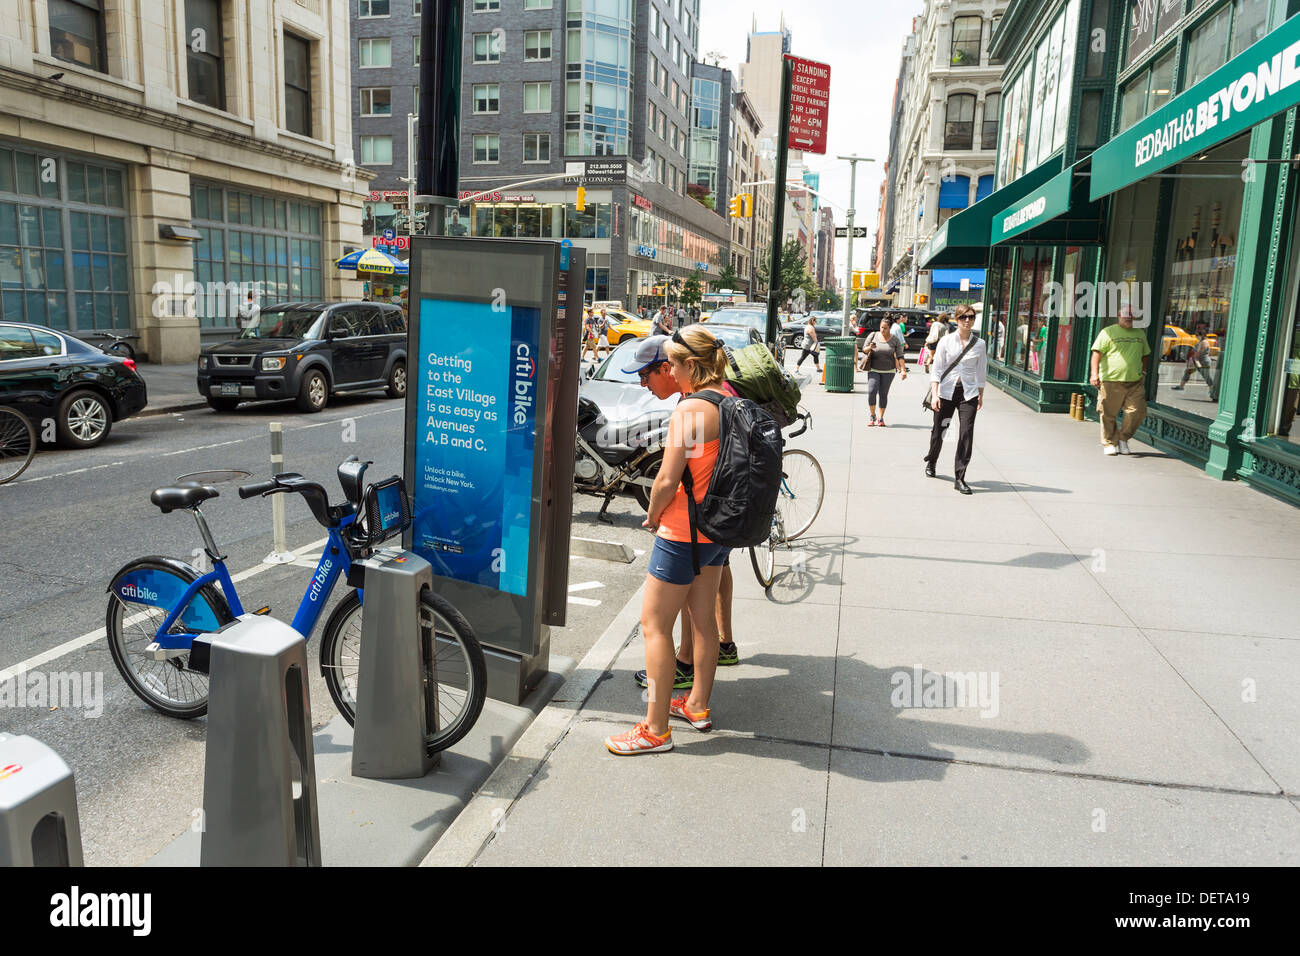 Jeune couple payant pour vélos Citi au kiosque, système de partage de vélos publics à New York City Banque D'Images